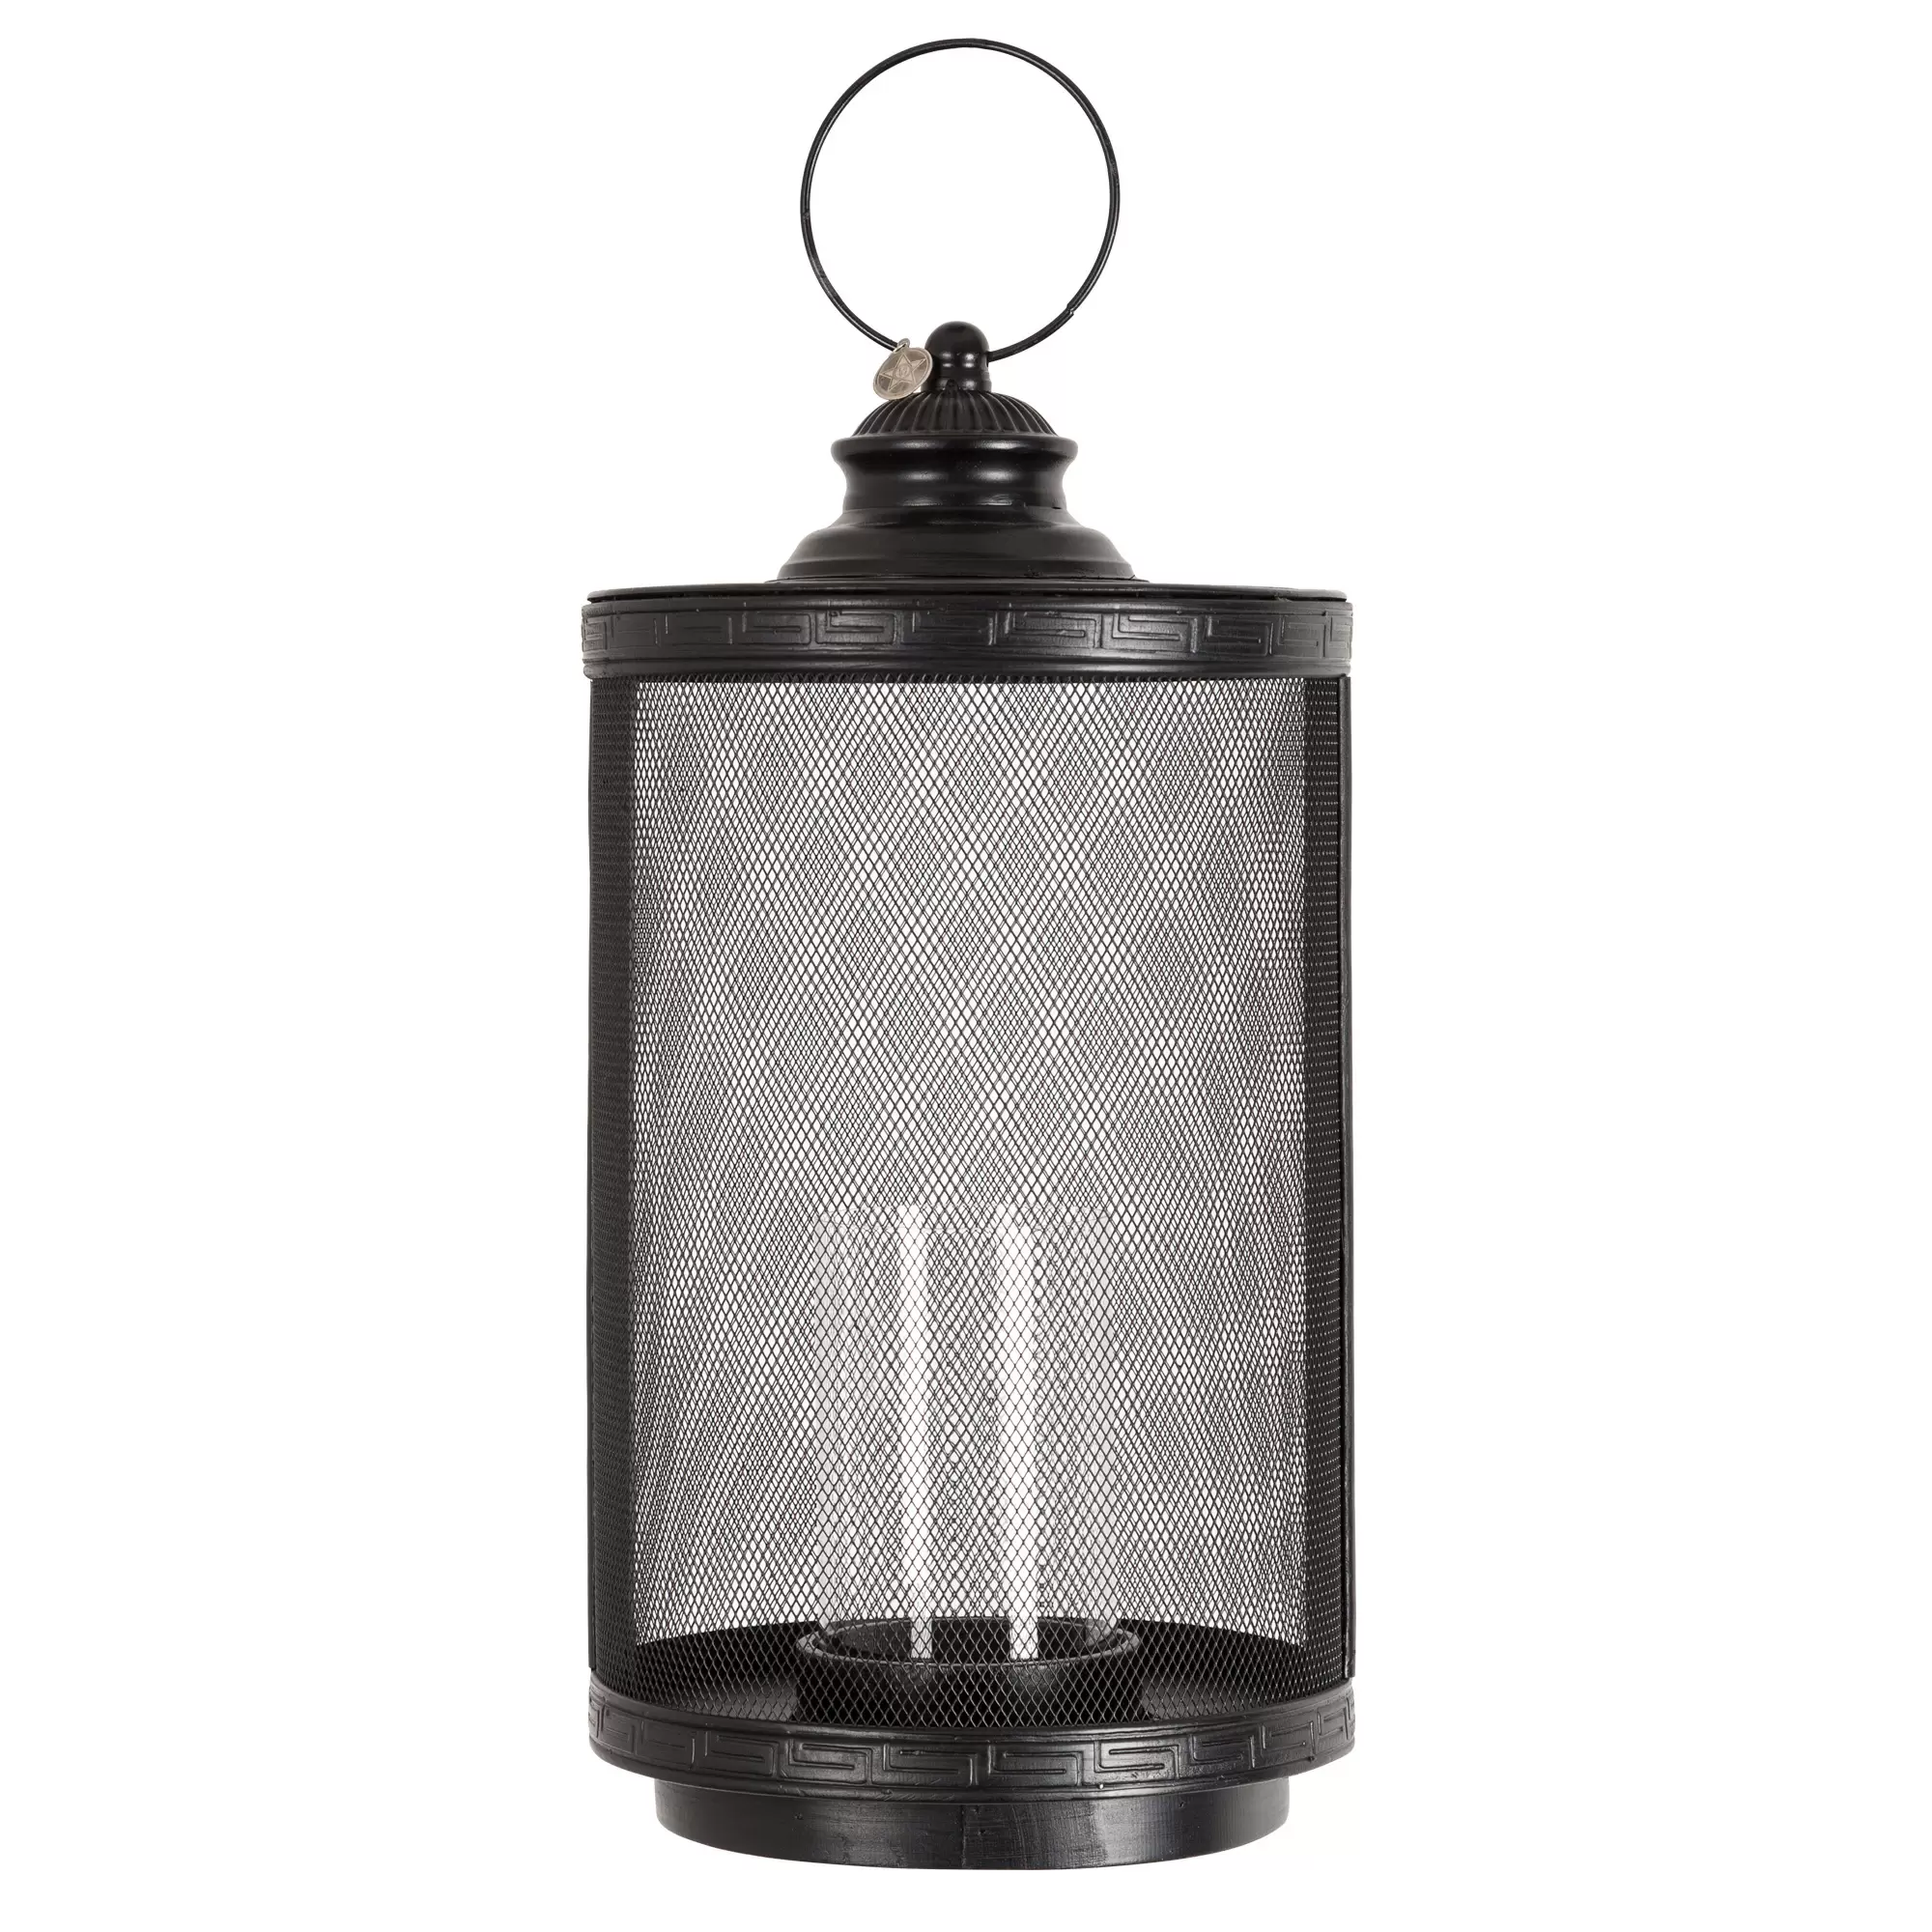 Windlicht Mythic lantaarn luxe uitvoering echt glas